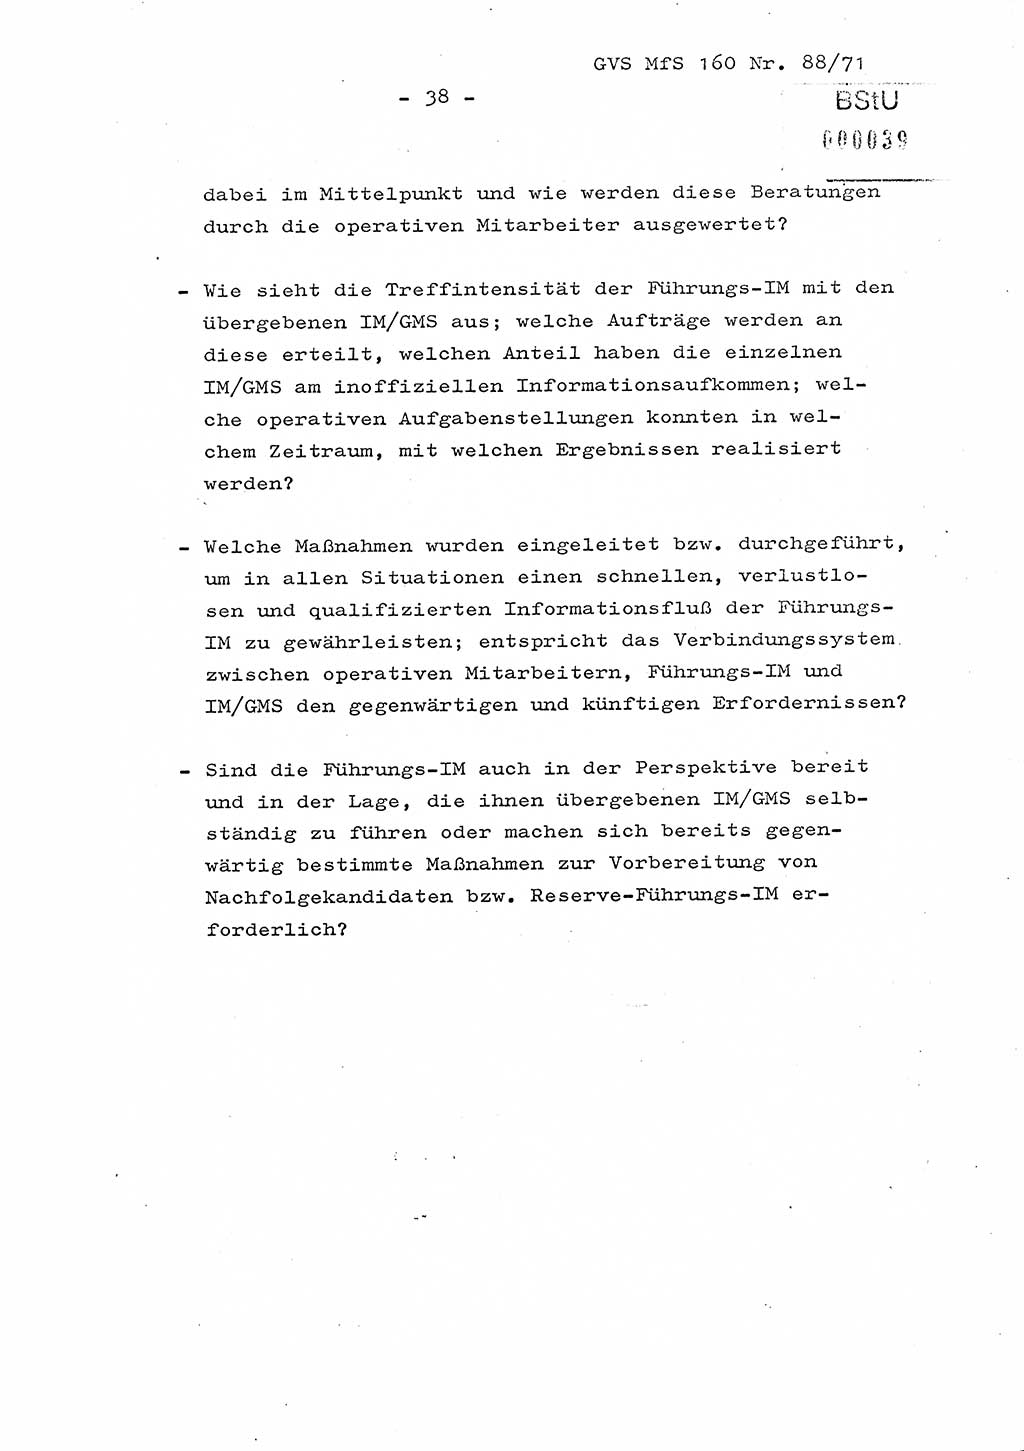 Dissertation Oberstleutnant Josef Schwarz (BV Schwerin), Major Fritz Amm (JHS), Hauptmann Peter Gräßler (JHS), Ministerium für Staatssicherheit (MfS) [Deutsche Demokratische Republik (DDR)], Juristische Hochschule (JHS), Geheime Verschlußsache (GVS) 160-88/71, Potsdam 1972, Seite 38 (Diss. MfS DDR JHS GVS 160-88/71 1972, S. 38)